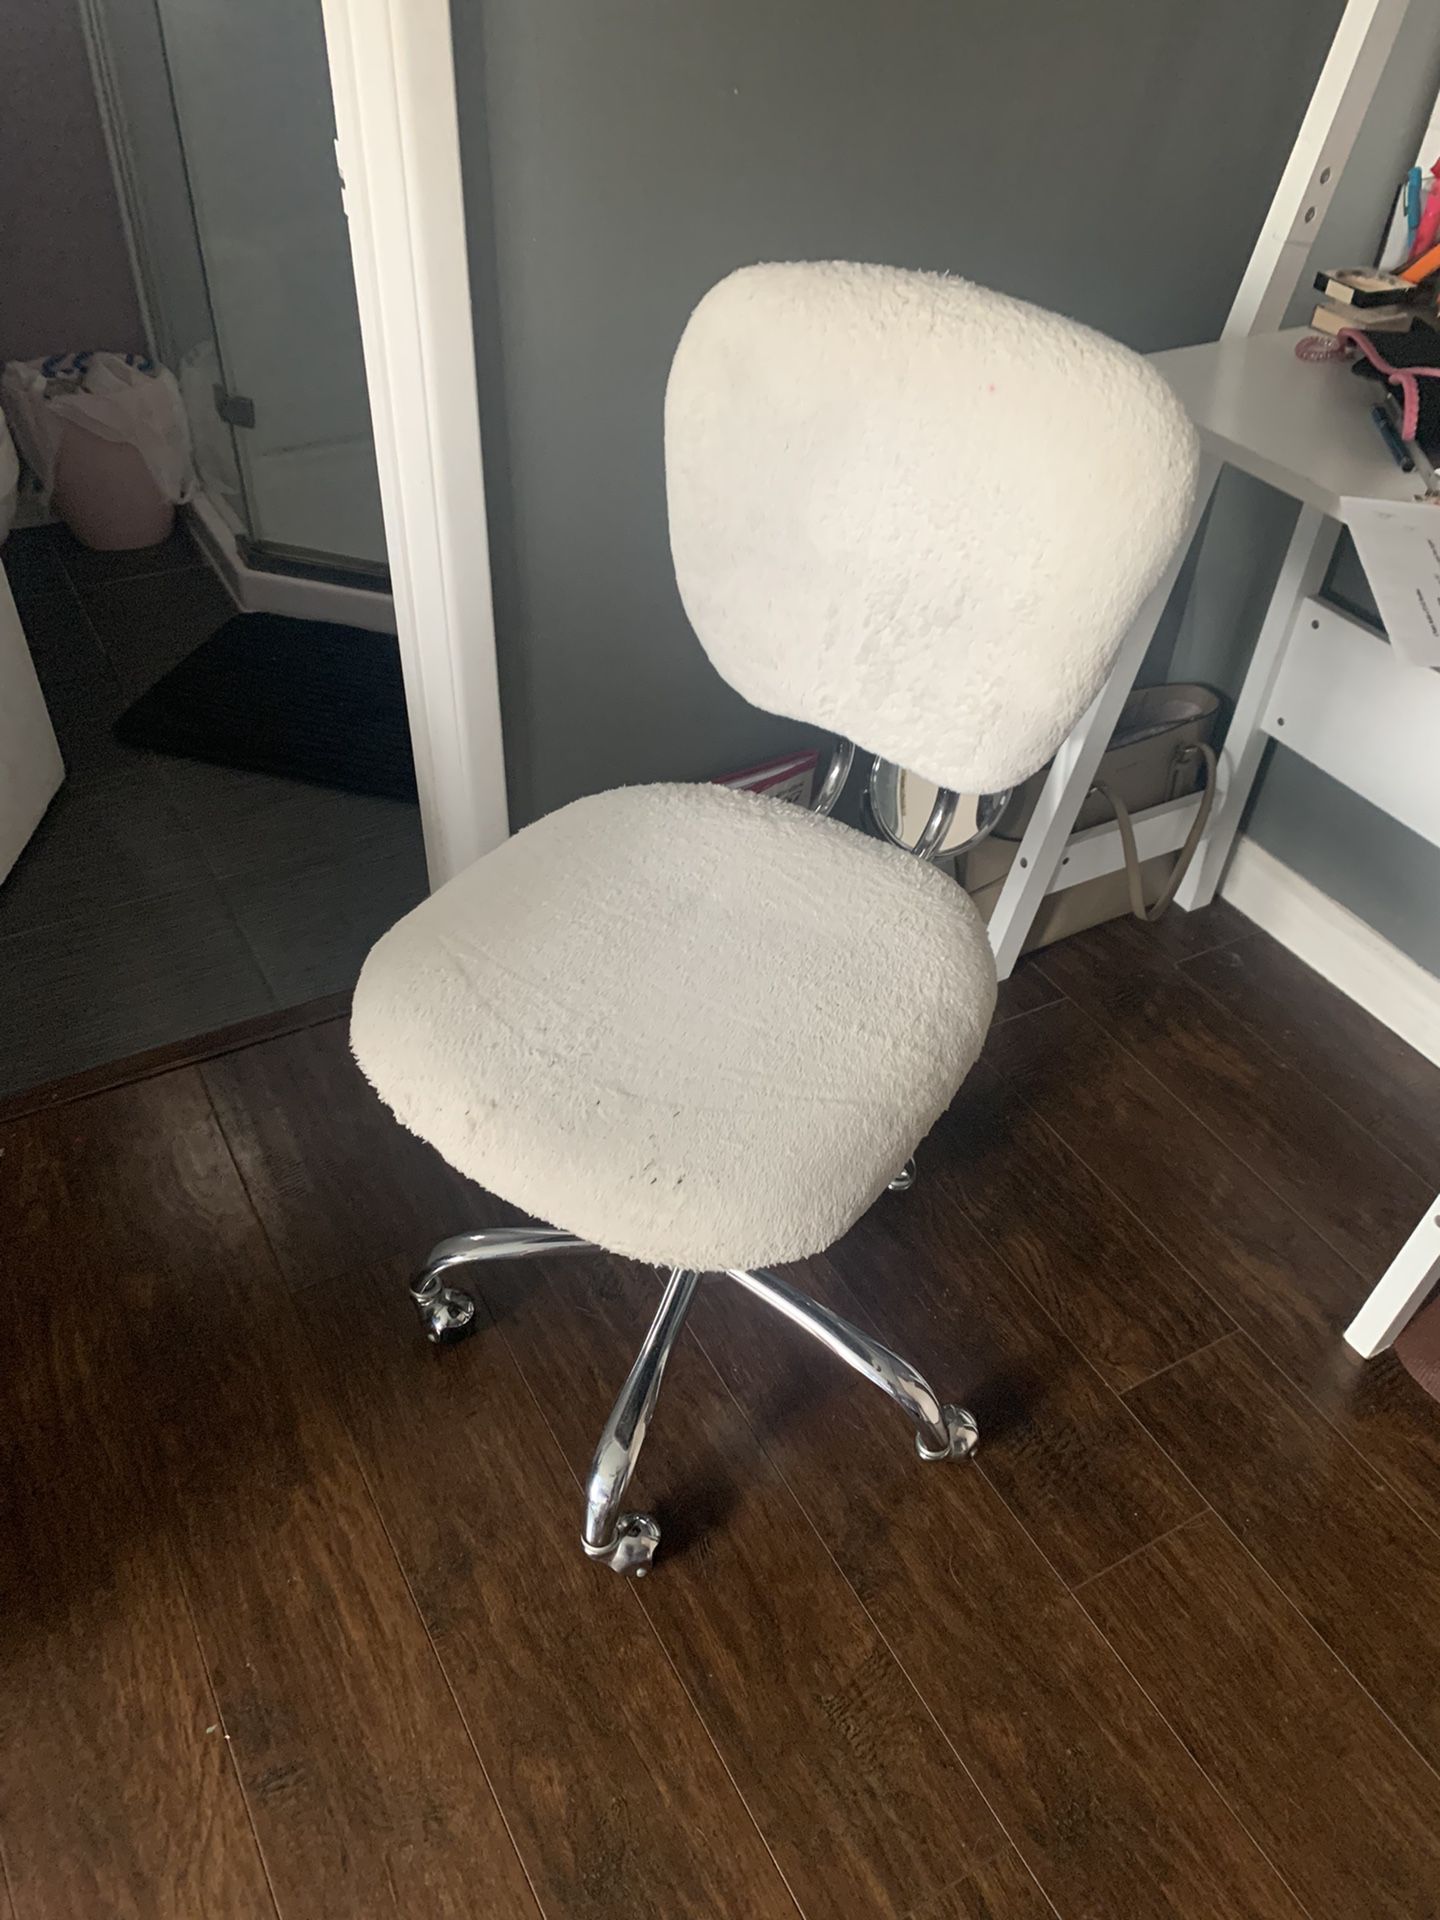 White Desk Chair